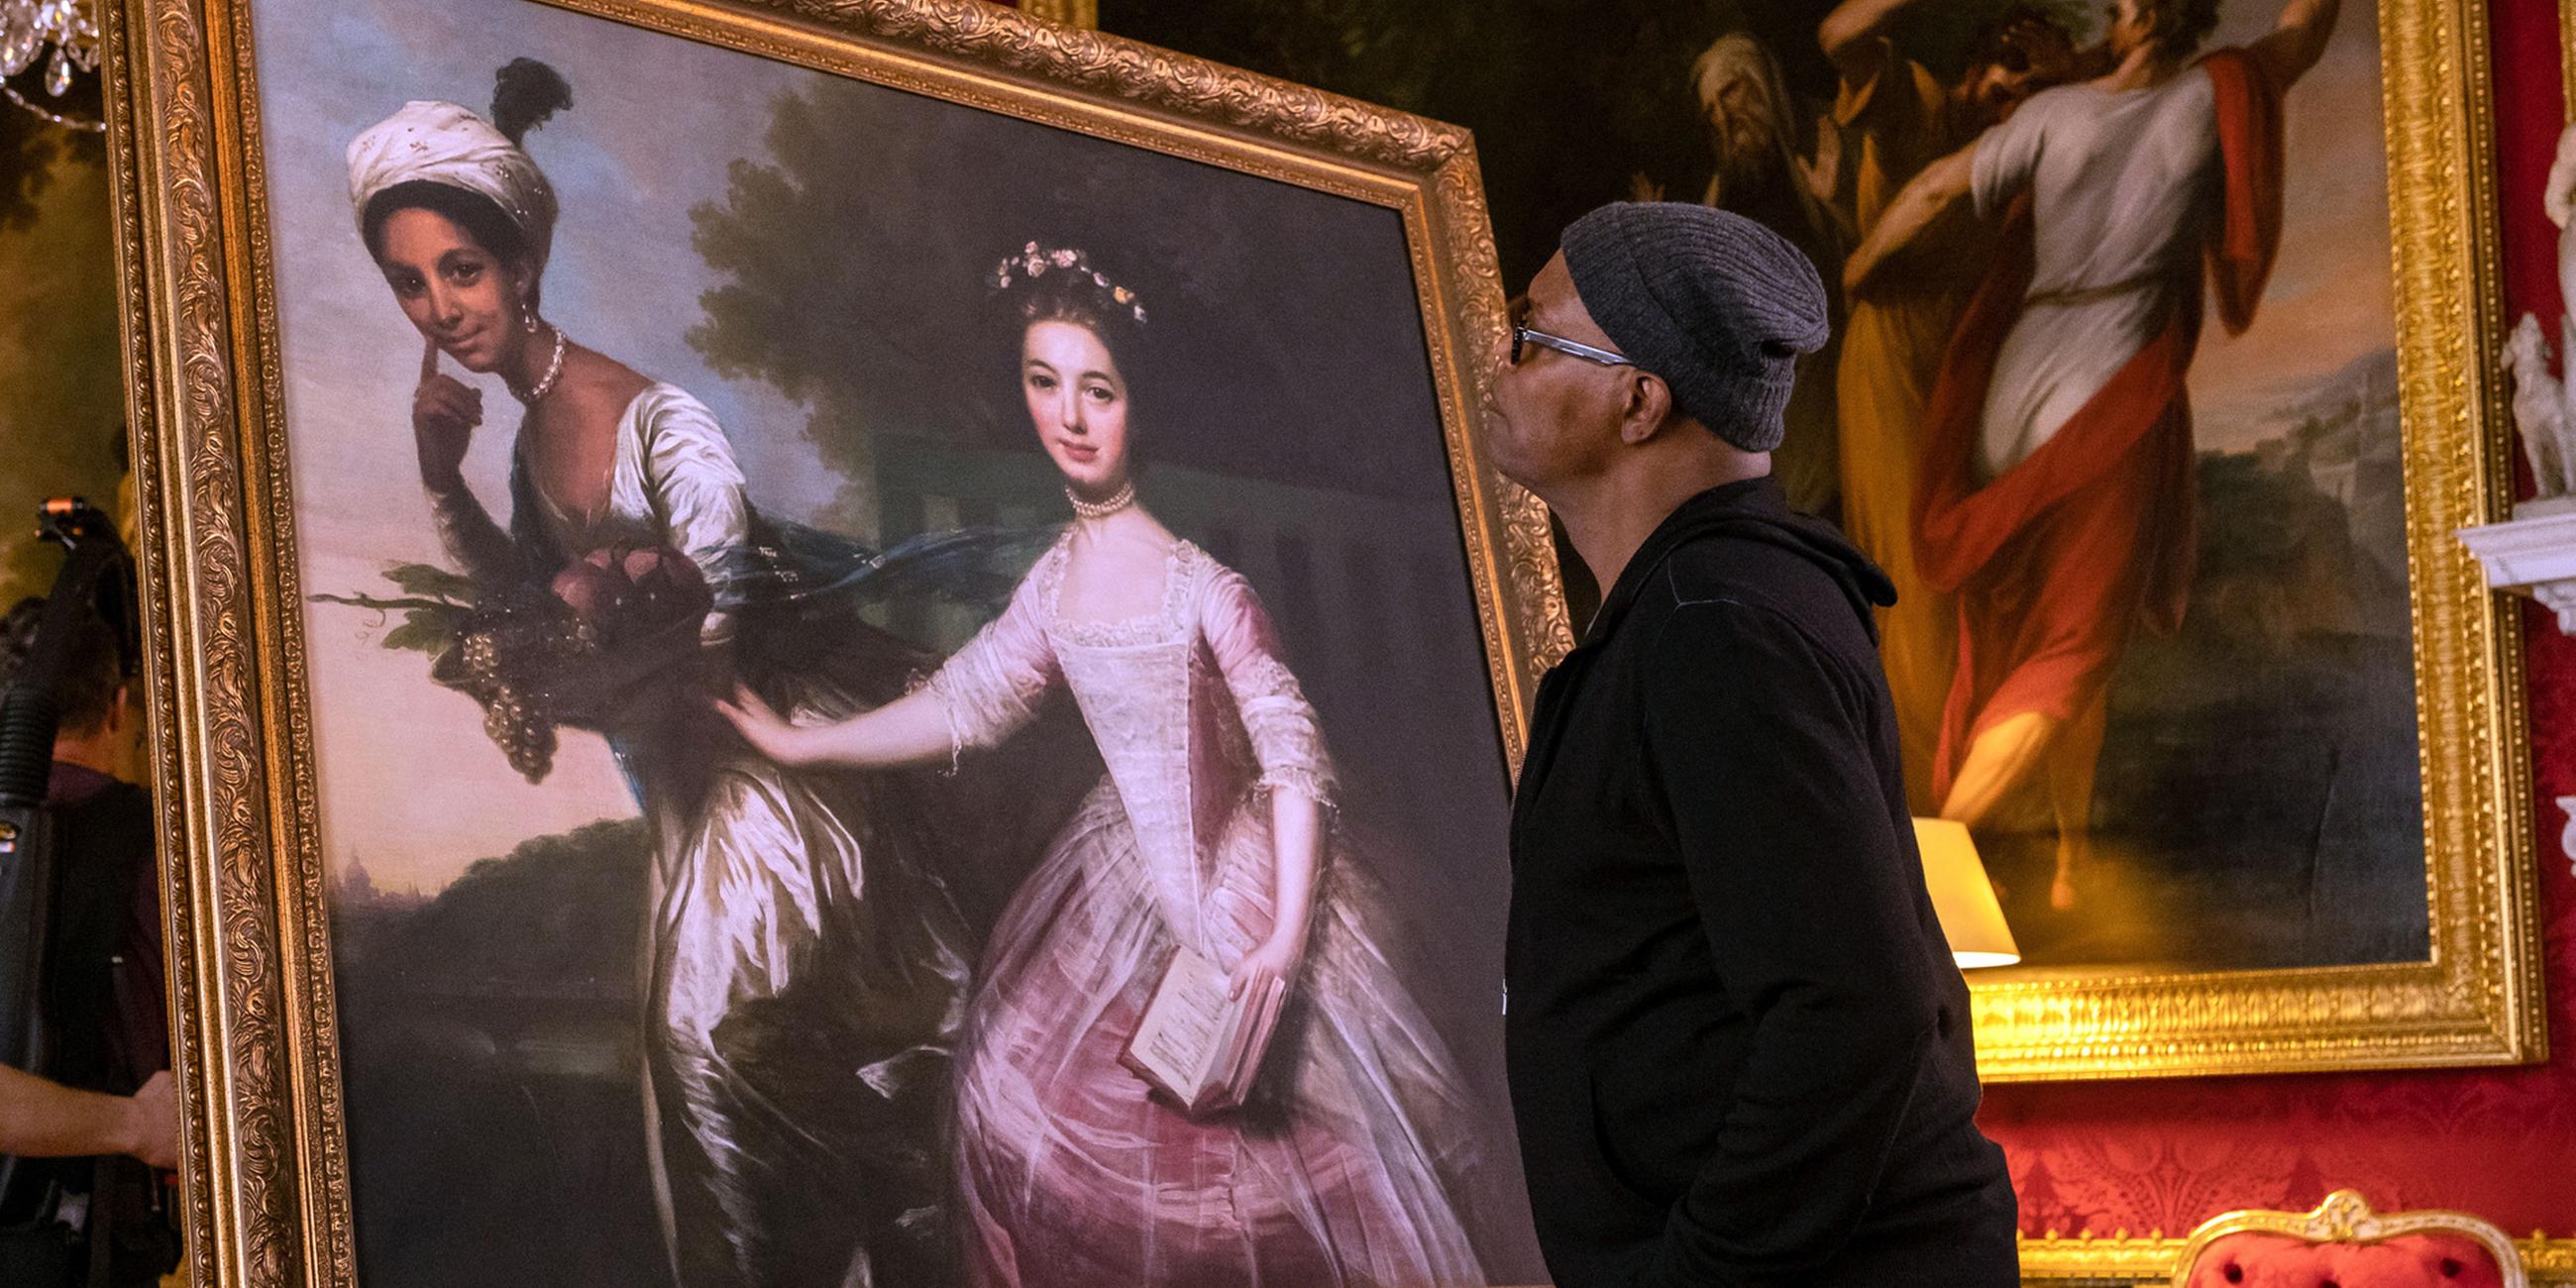 Samuel L. Jackson schaut auf ein historisches Gemälde mit zwei Frauen in prächtigen Kleidern.